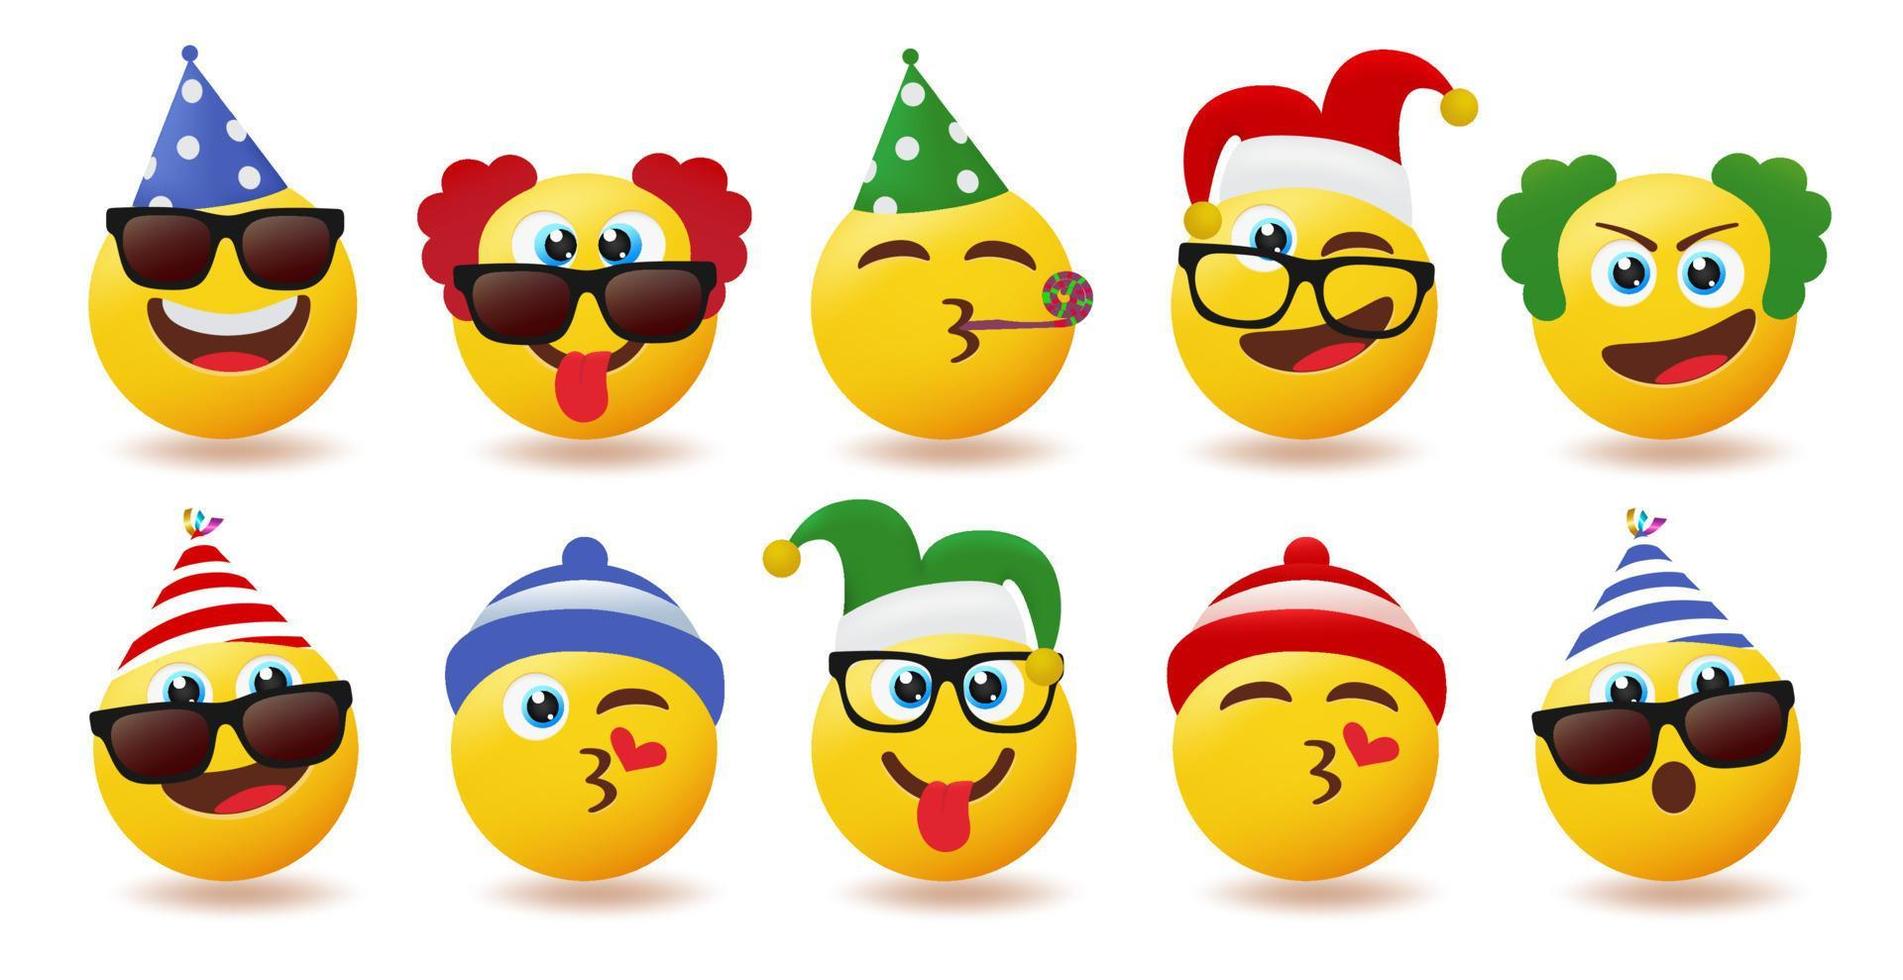 Emoji-Geburtstagszeichen-Vektorsatz. Emoticons Party Emojis mit Geburtstagshüten in süßen und lustigen Gesichtern für das Design der Kollektion von Feierfiguren. Vektor-Illustration. vektor